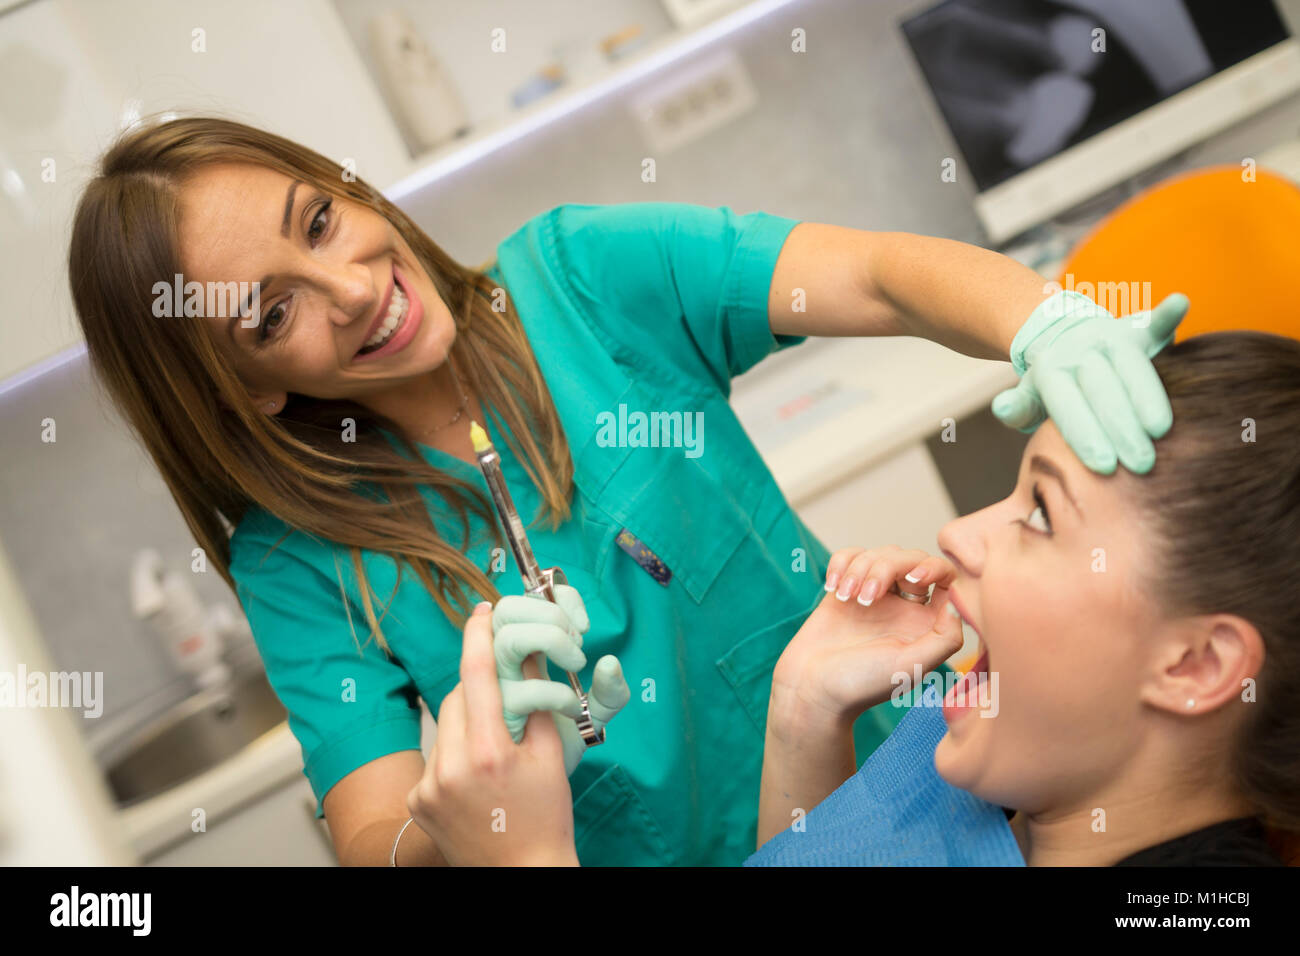 Denti dell'ago immagini e fotografie stock ad alta risoluzione - Alamy